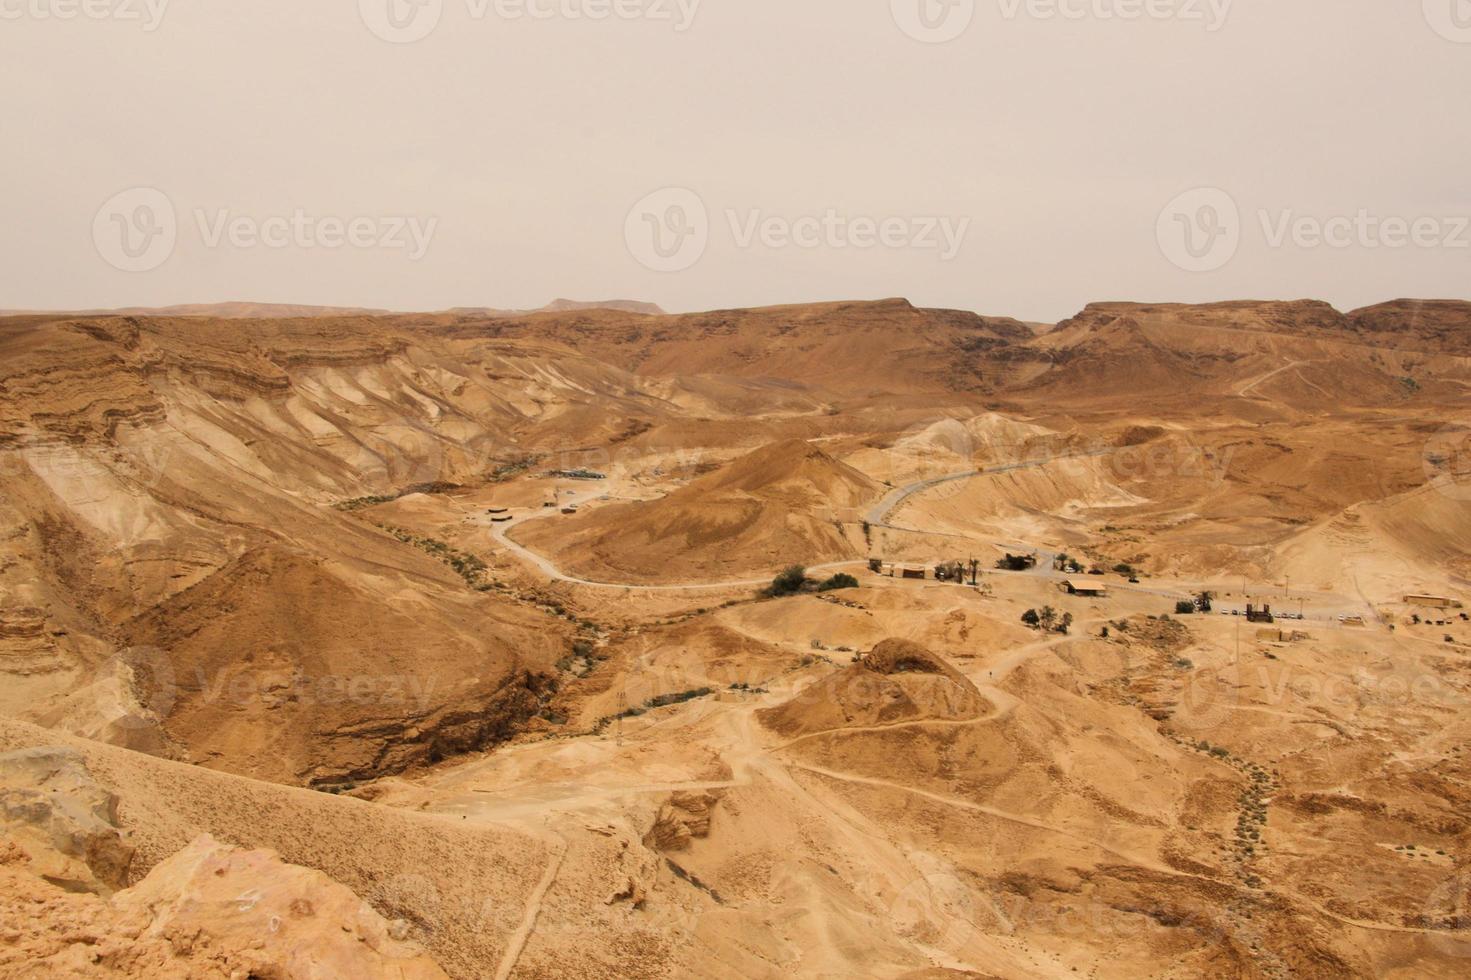 een uitzicht op het oude joodse fort van masada in israël foto